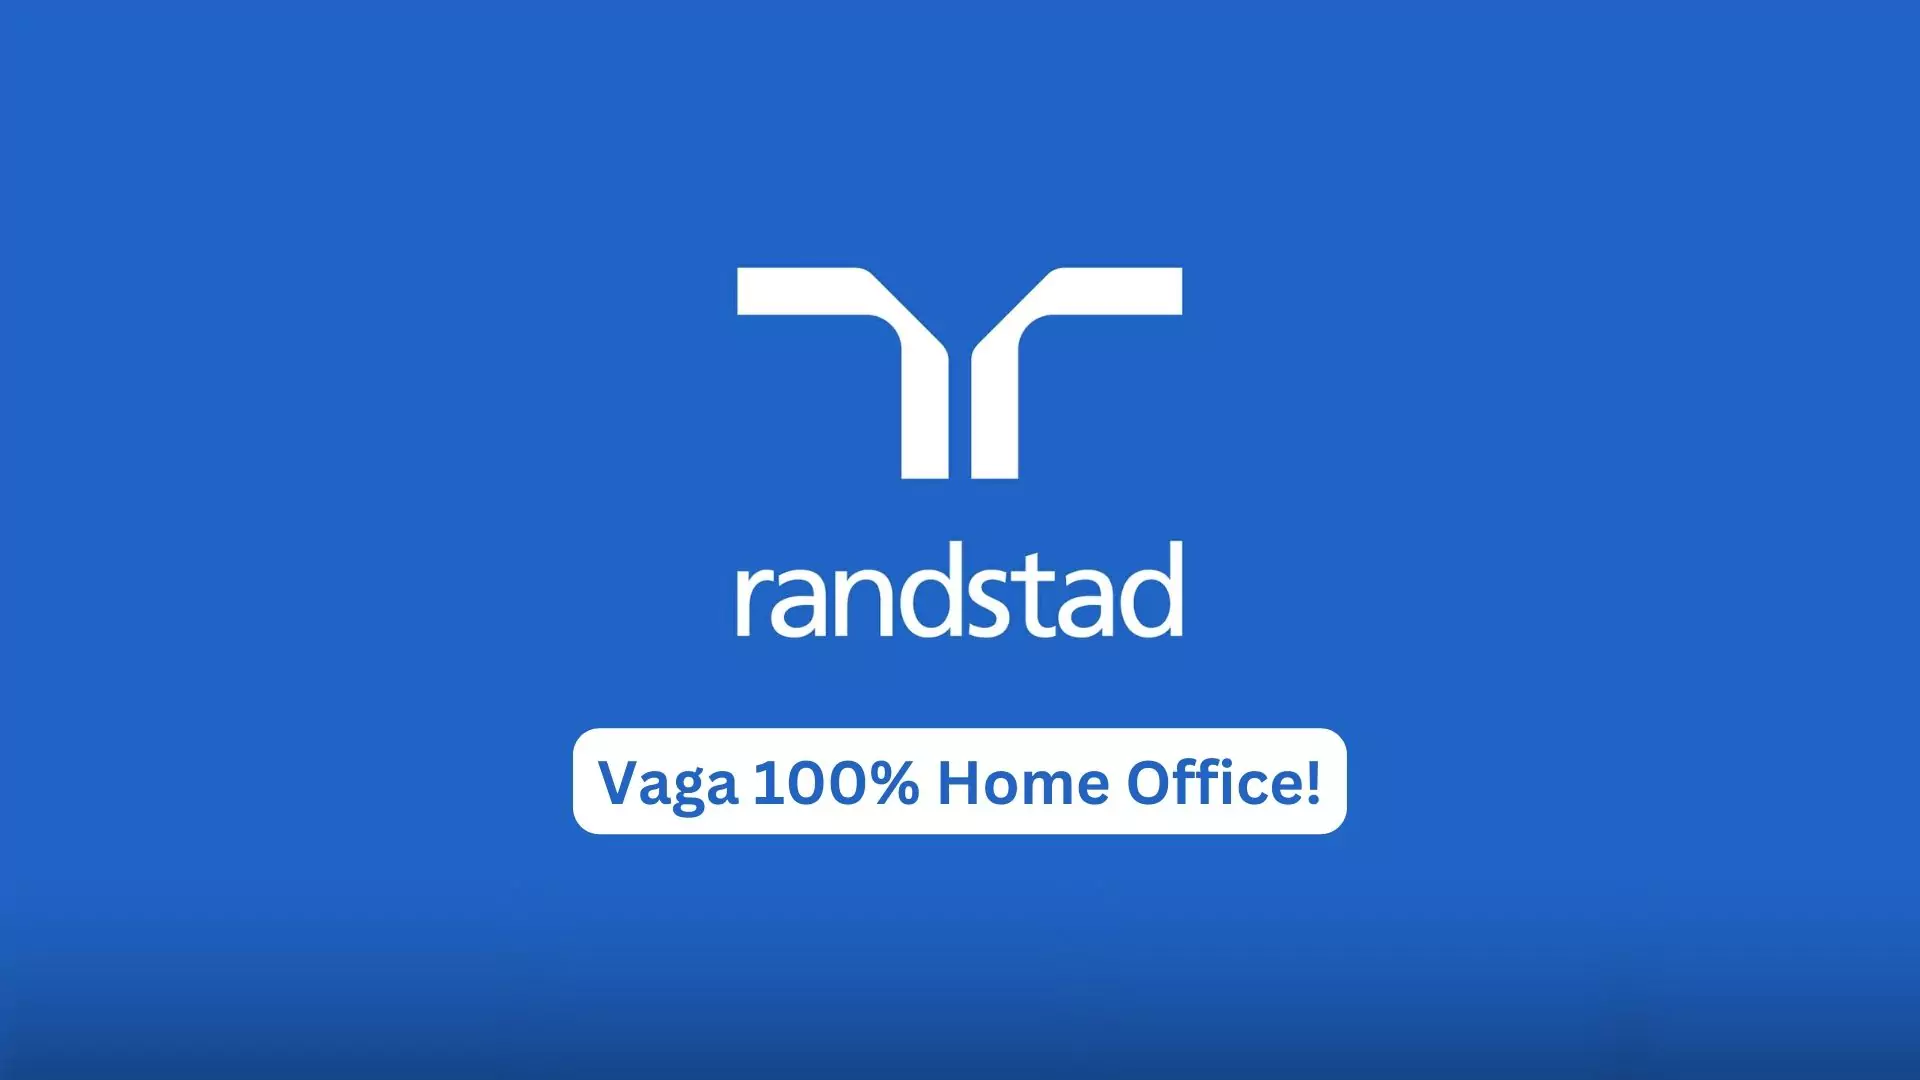 ANALISTA FINANCEIRO na Randstad com 3 dias de Home Office na Semana!, Analista de Relacionamento JR CX na Randstad